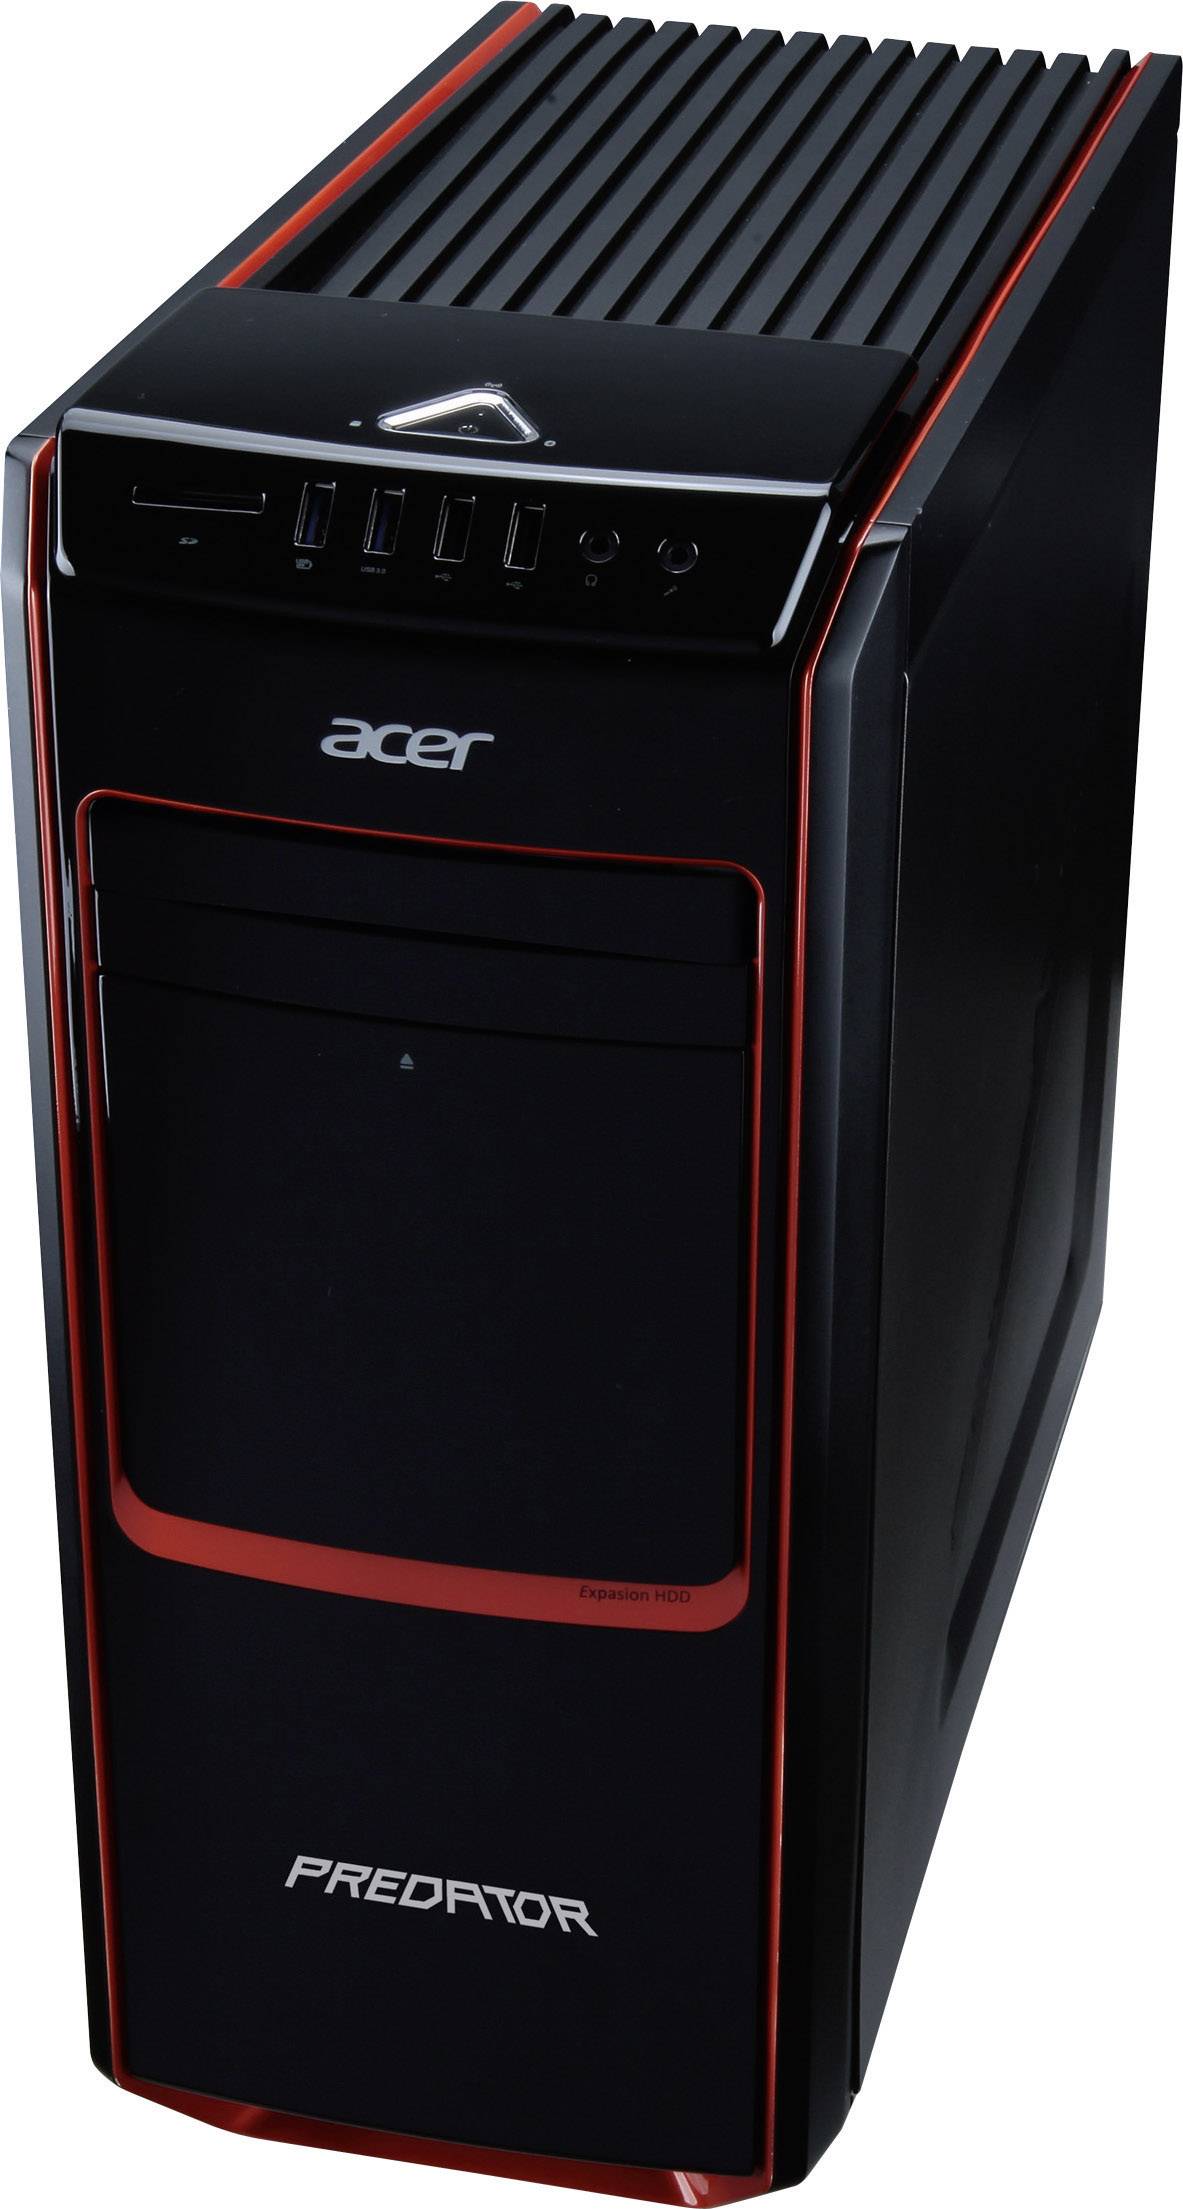 Predator systems. Acer Predator системный блок. Acer Predator g-Series. Acer Aspire Predator g7200. Acer Predator системник 2013.